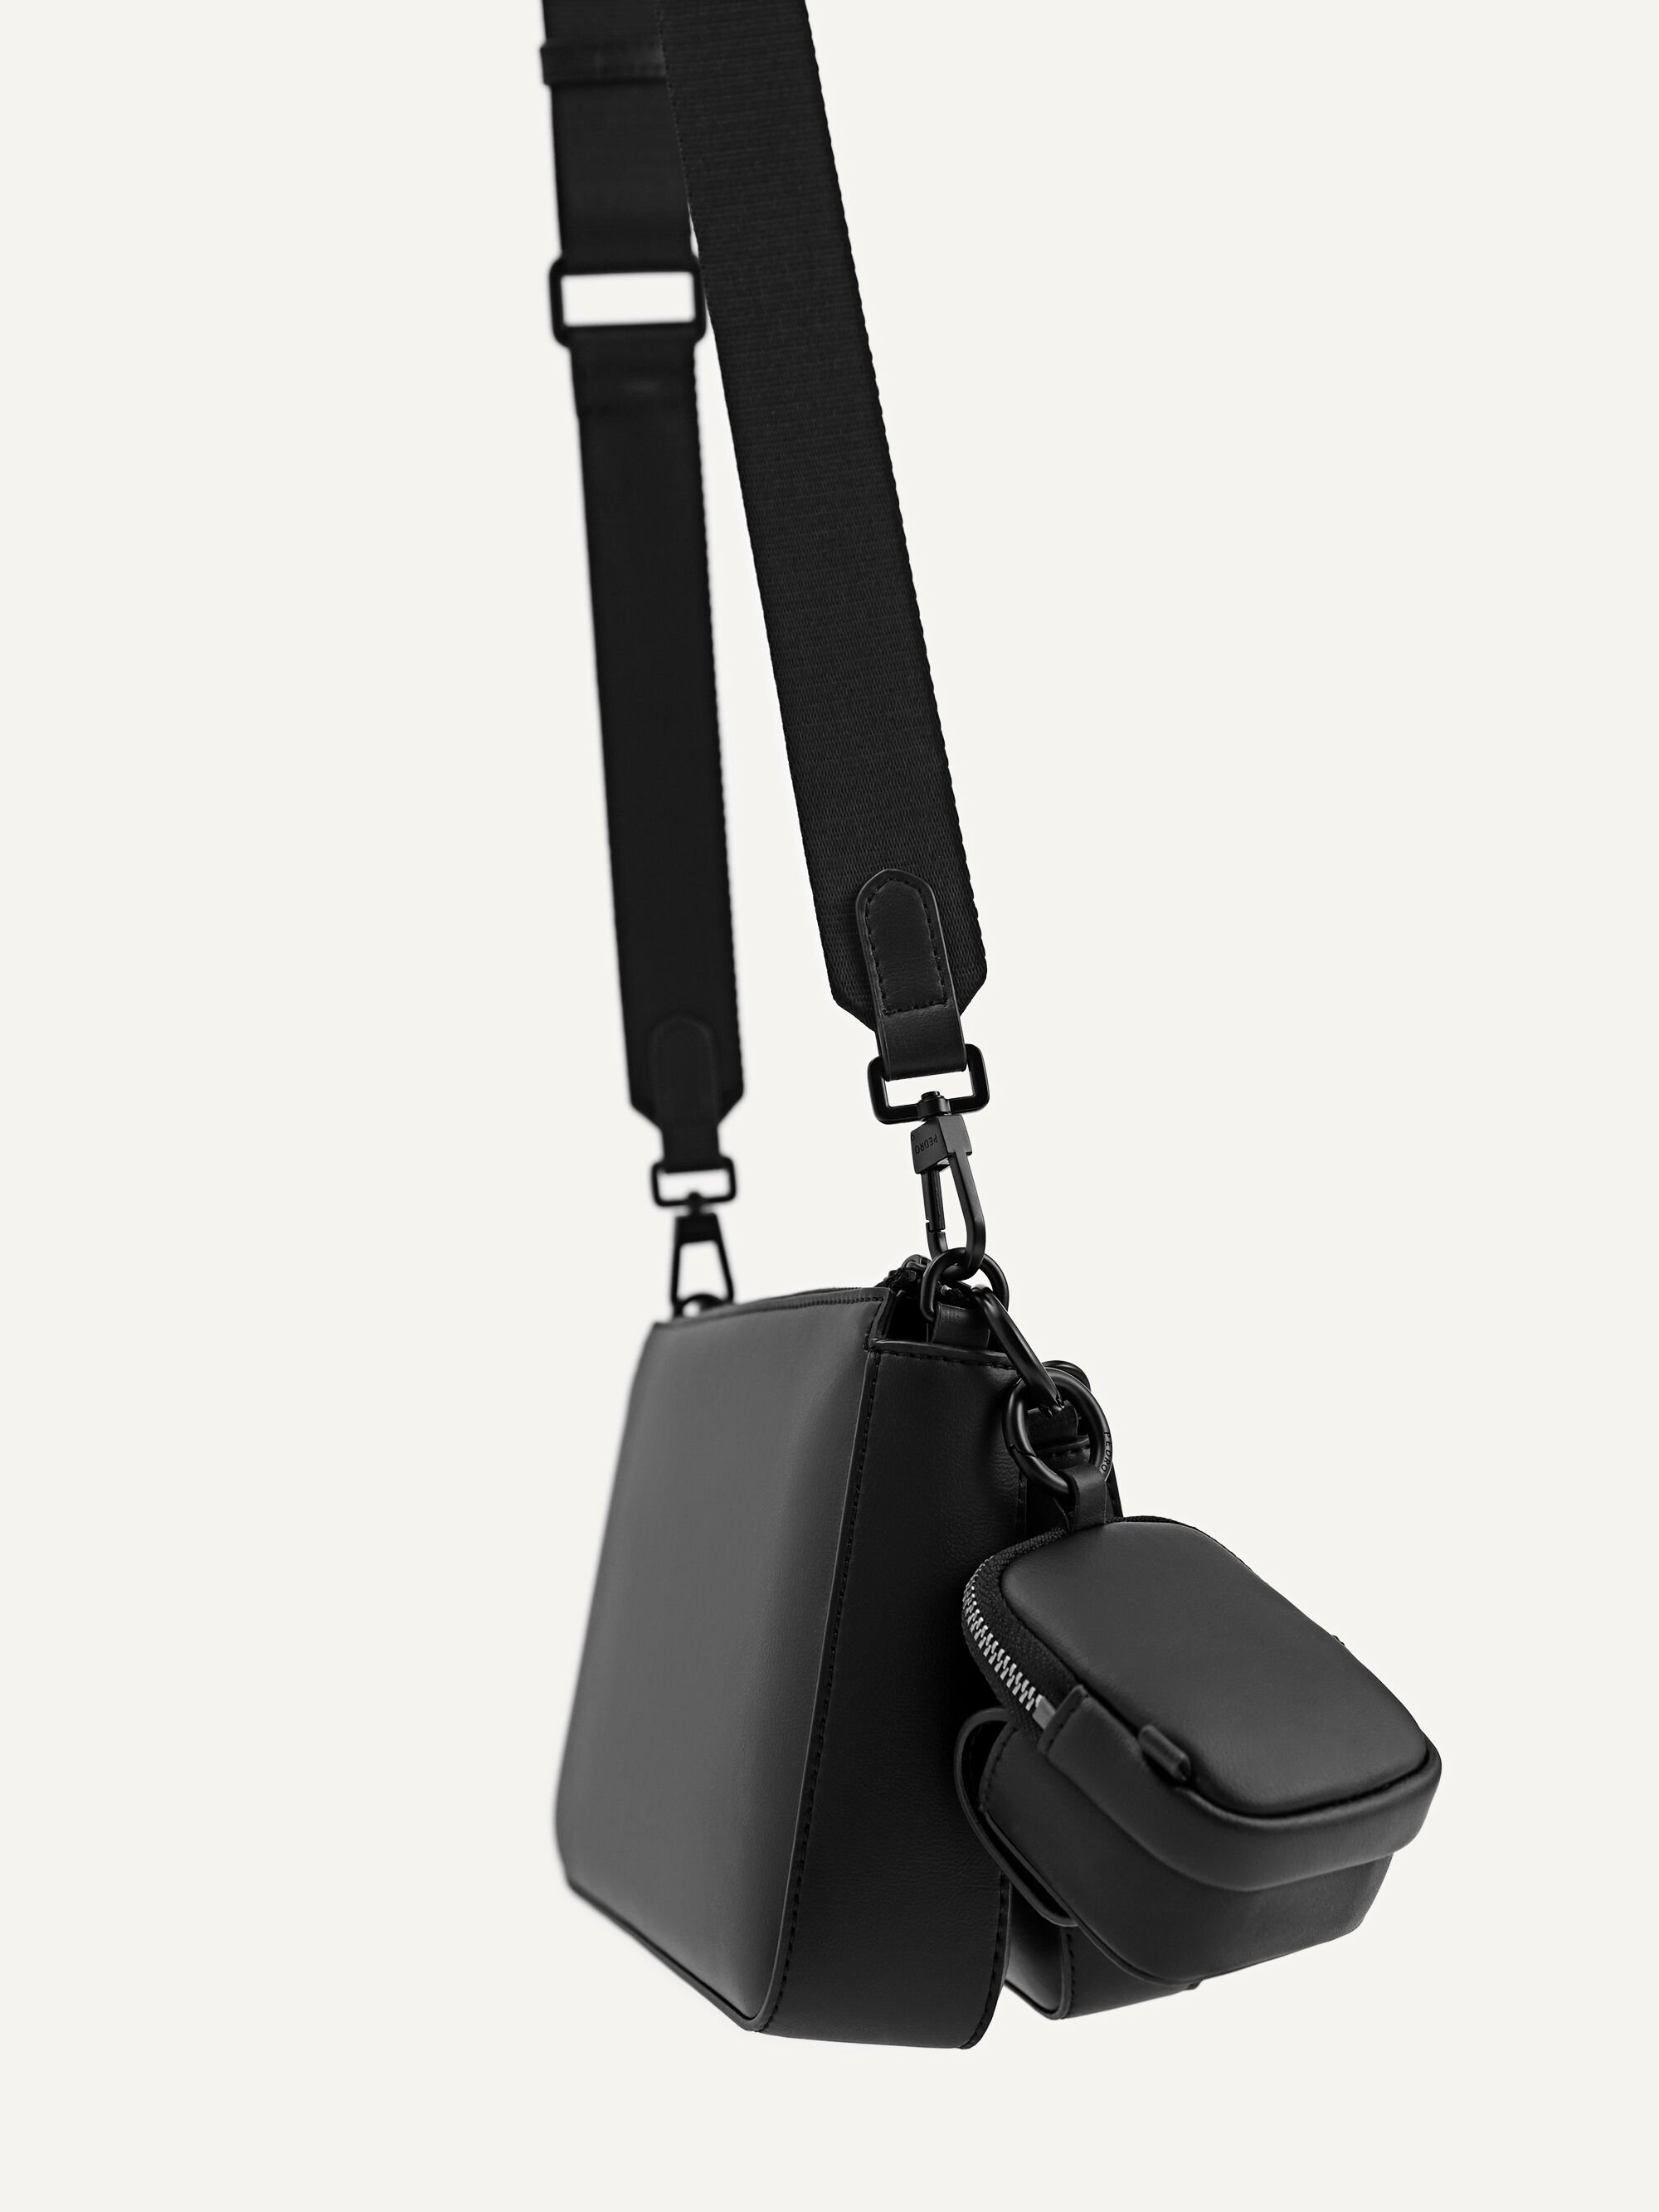 Buy ZARA Mini Messenger Bag Black [3500/005] Online - Best Price ZARA Mini  Messenger Bag Black [3500/005] - Justdial Shop Online.